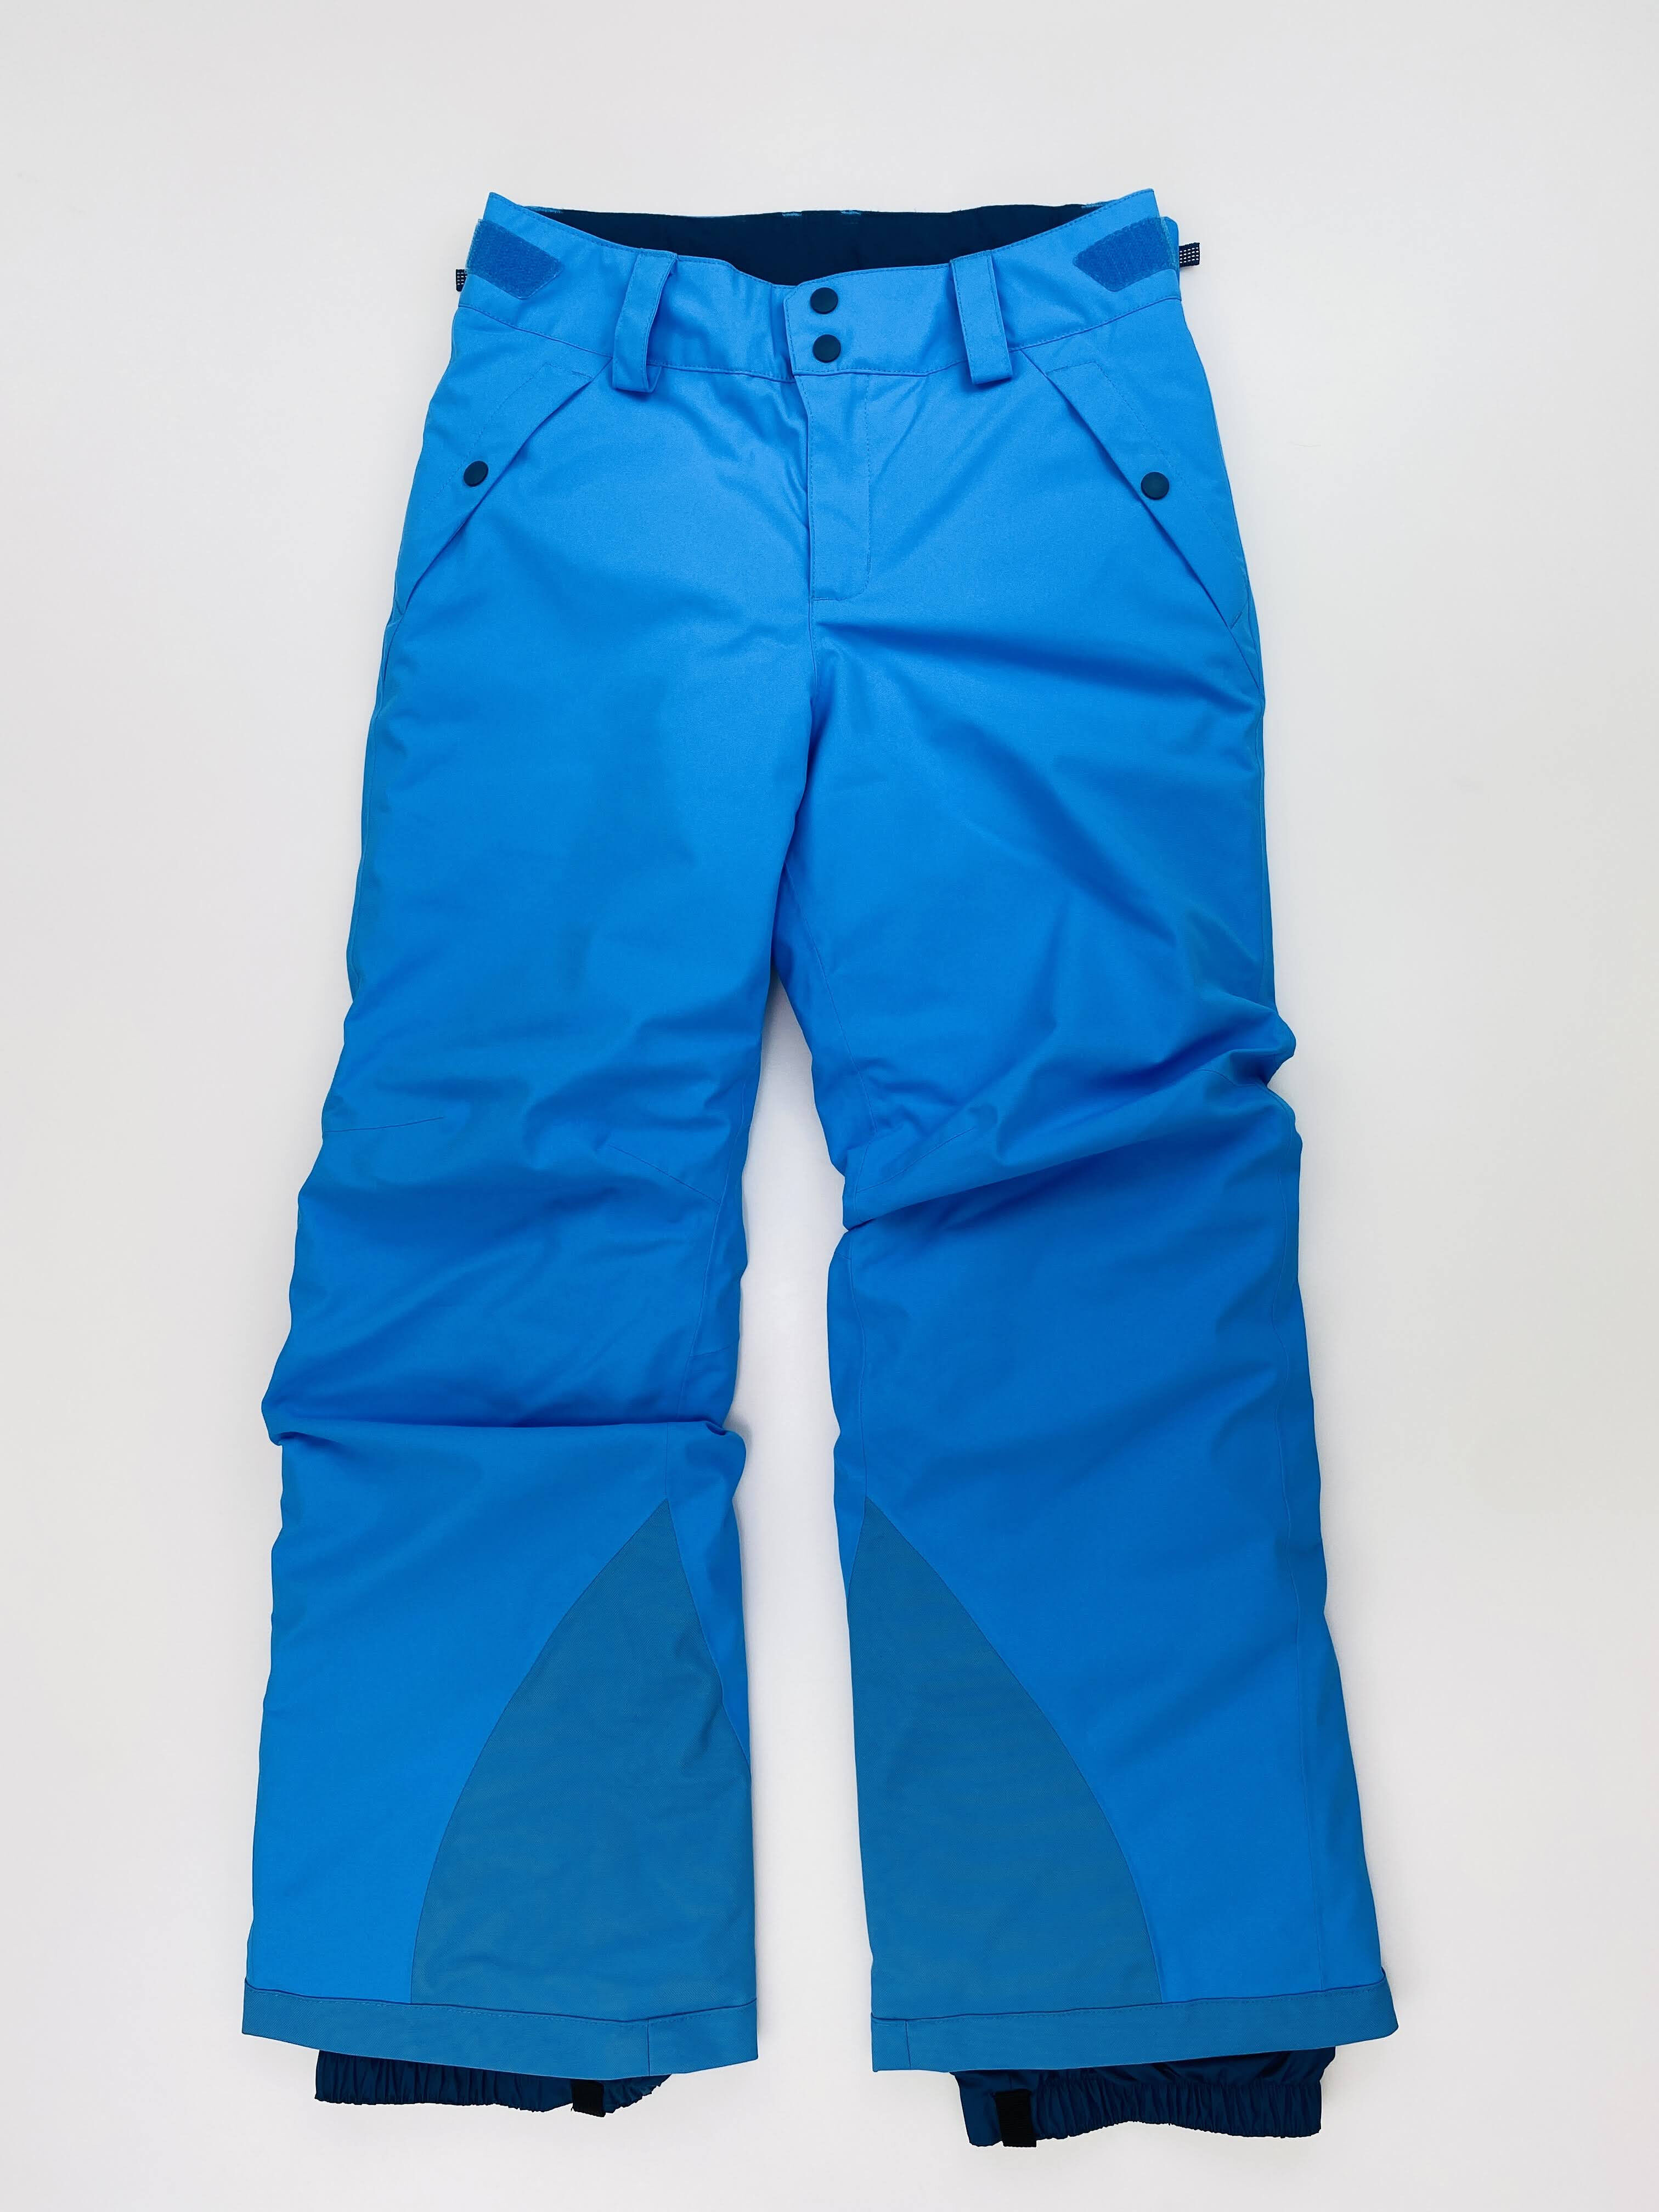 Patagonia Girls' Everyday Ready Pants - Second Hand Dětské lyžařské kalhoty - Modrý - M | Hardloop